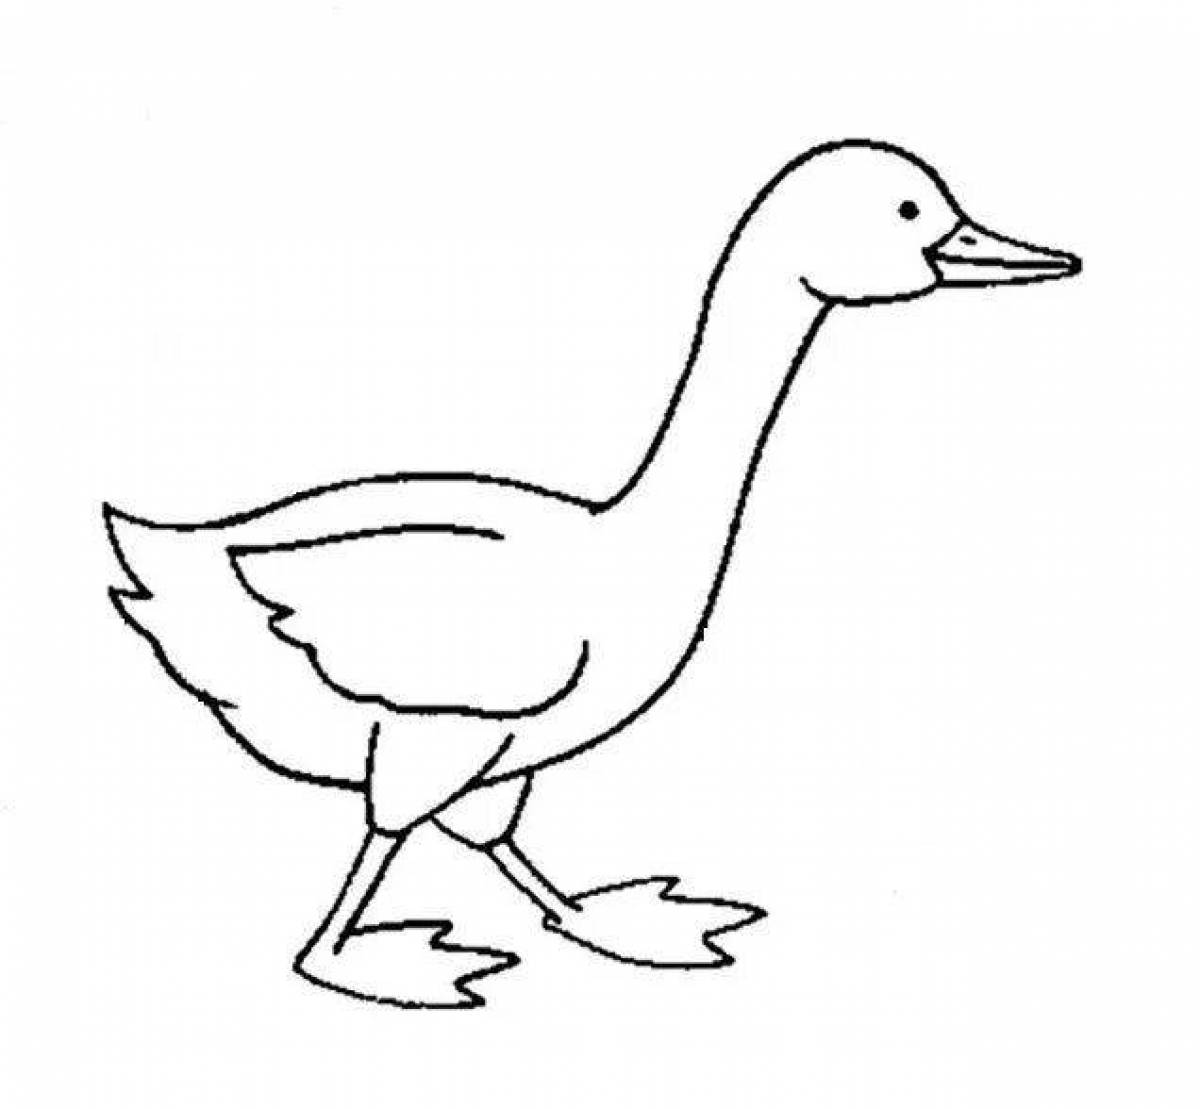 Children's coloring goose